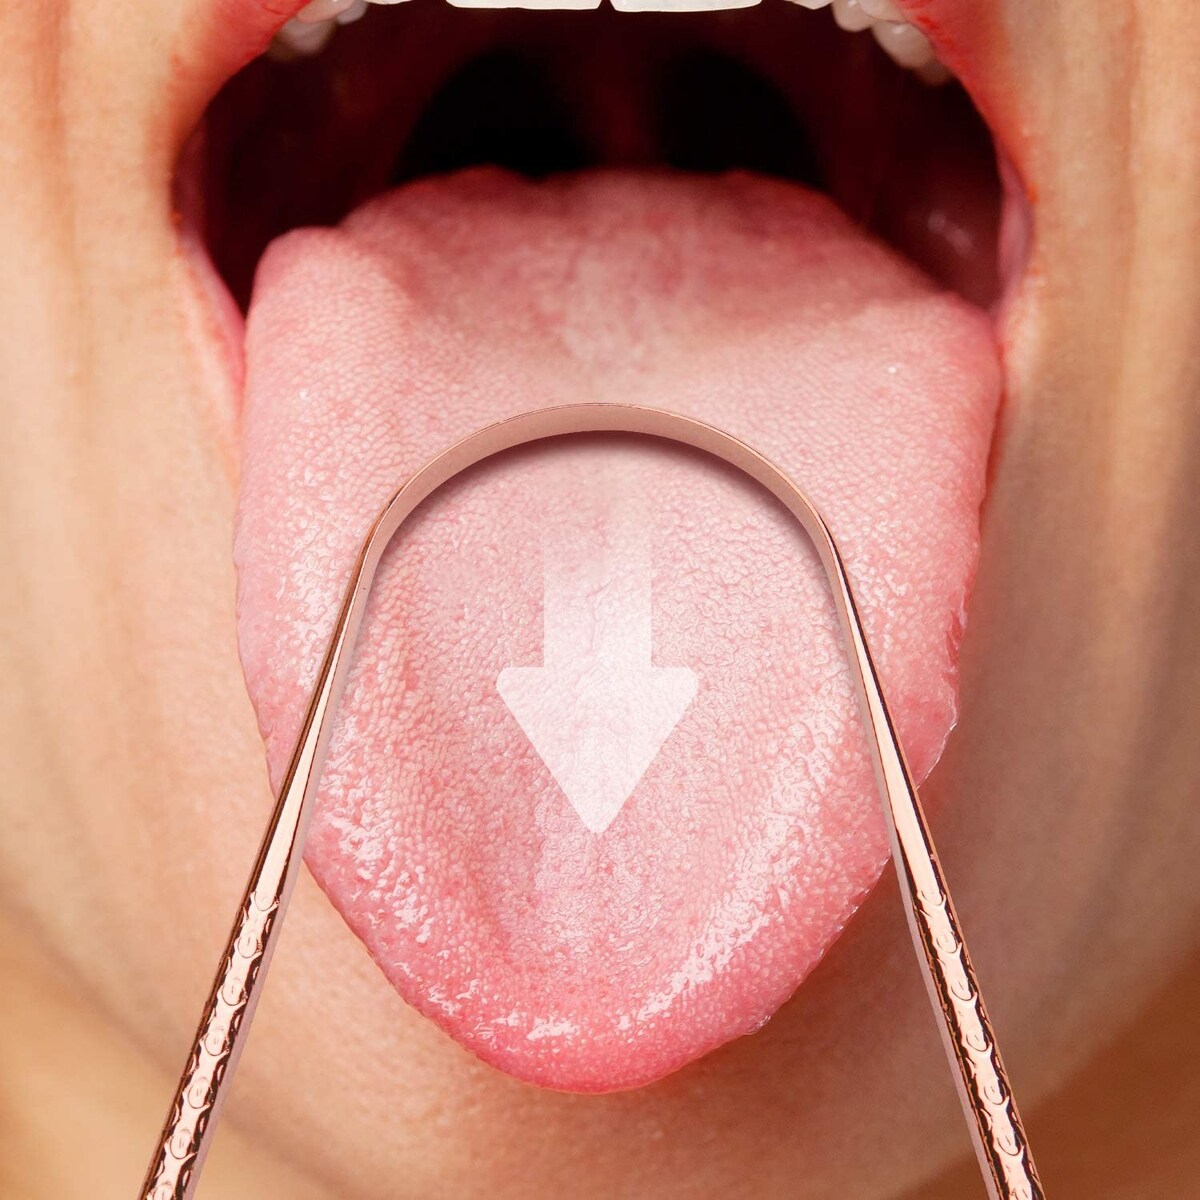  舌ブラシ したみがき 舌クリーナー 画像7 